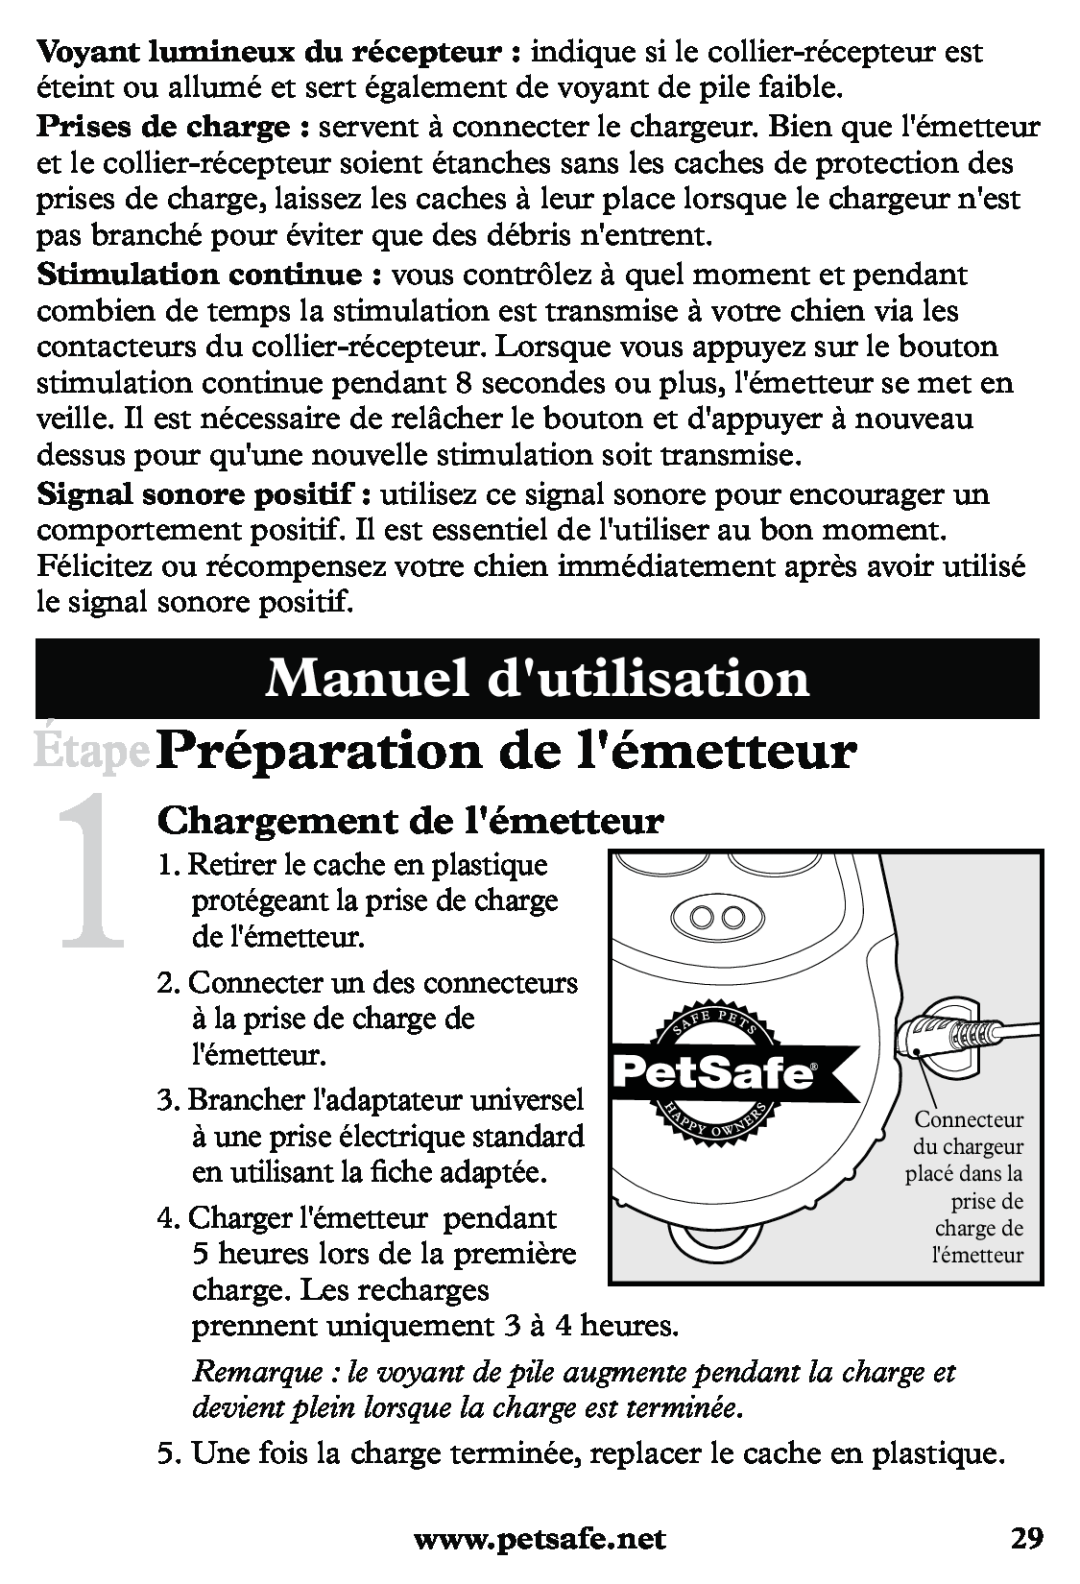 Petsafe PDT20-11939 manuel dutilisation Manuel dutilisation, Étape Préparation de lémetteur, 1Chargement de lémetteur 